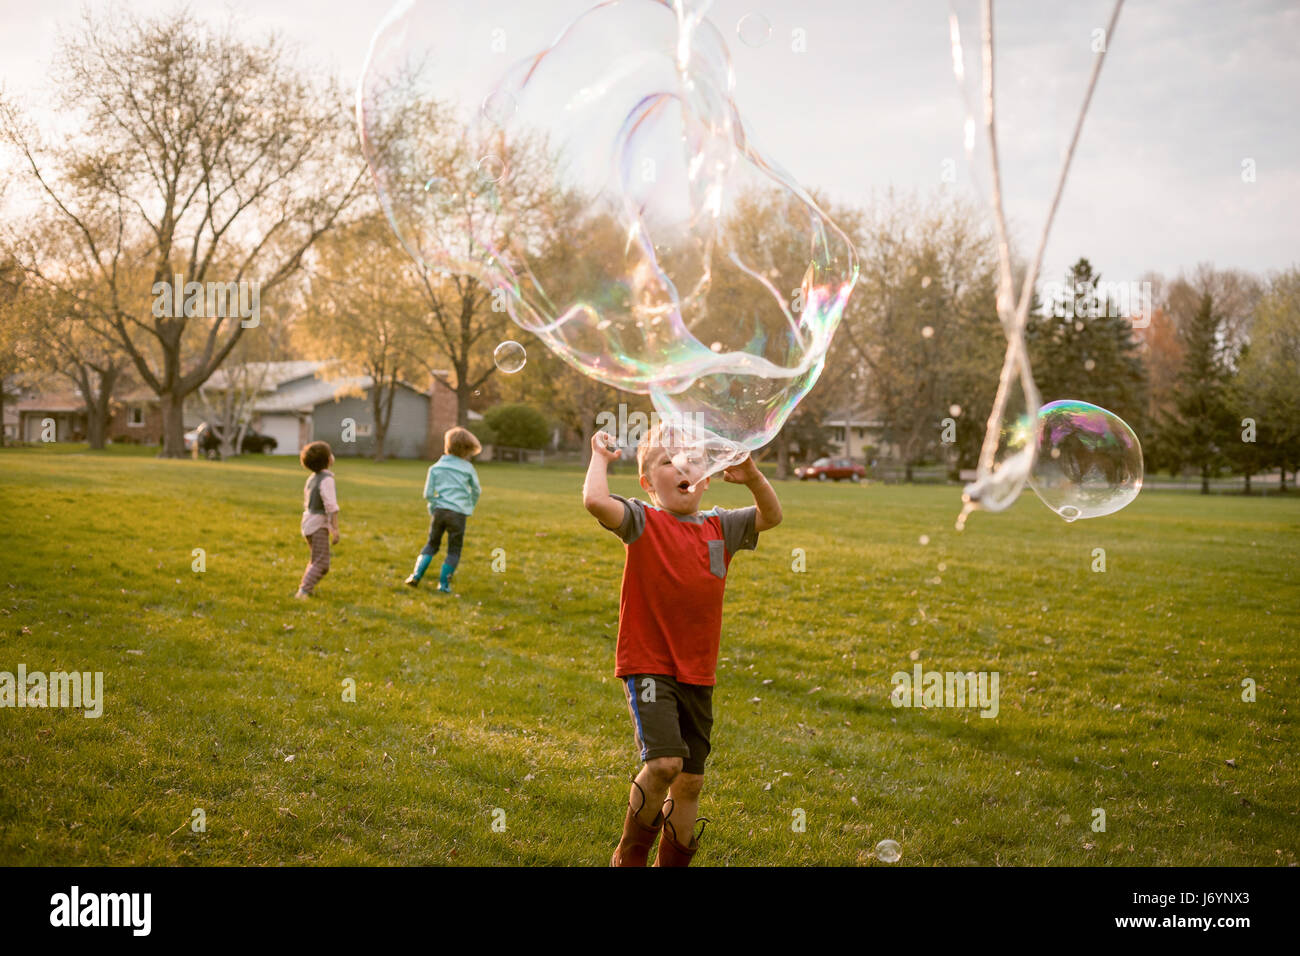 Trois enfants jouant avec des bulles géantes dans un parc Banque D'Images